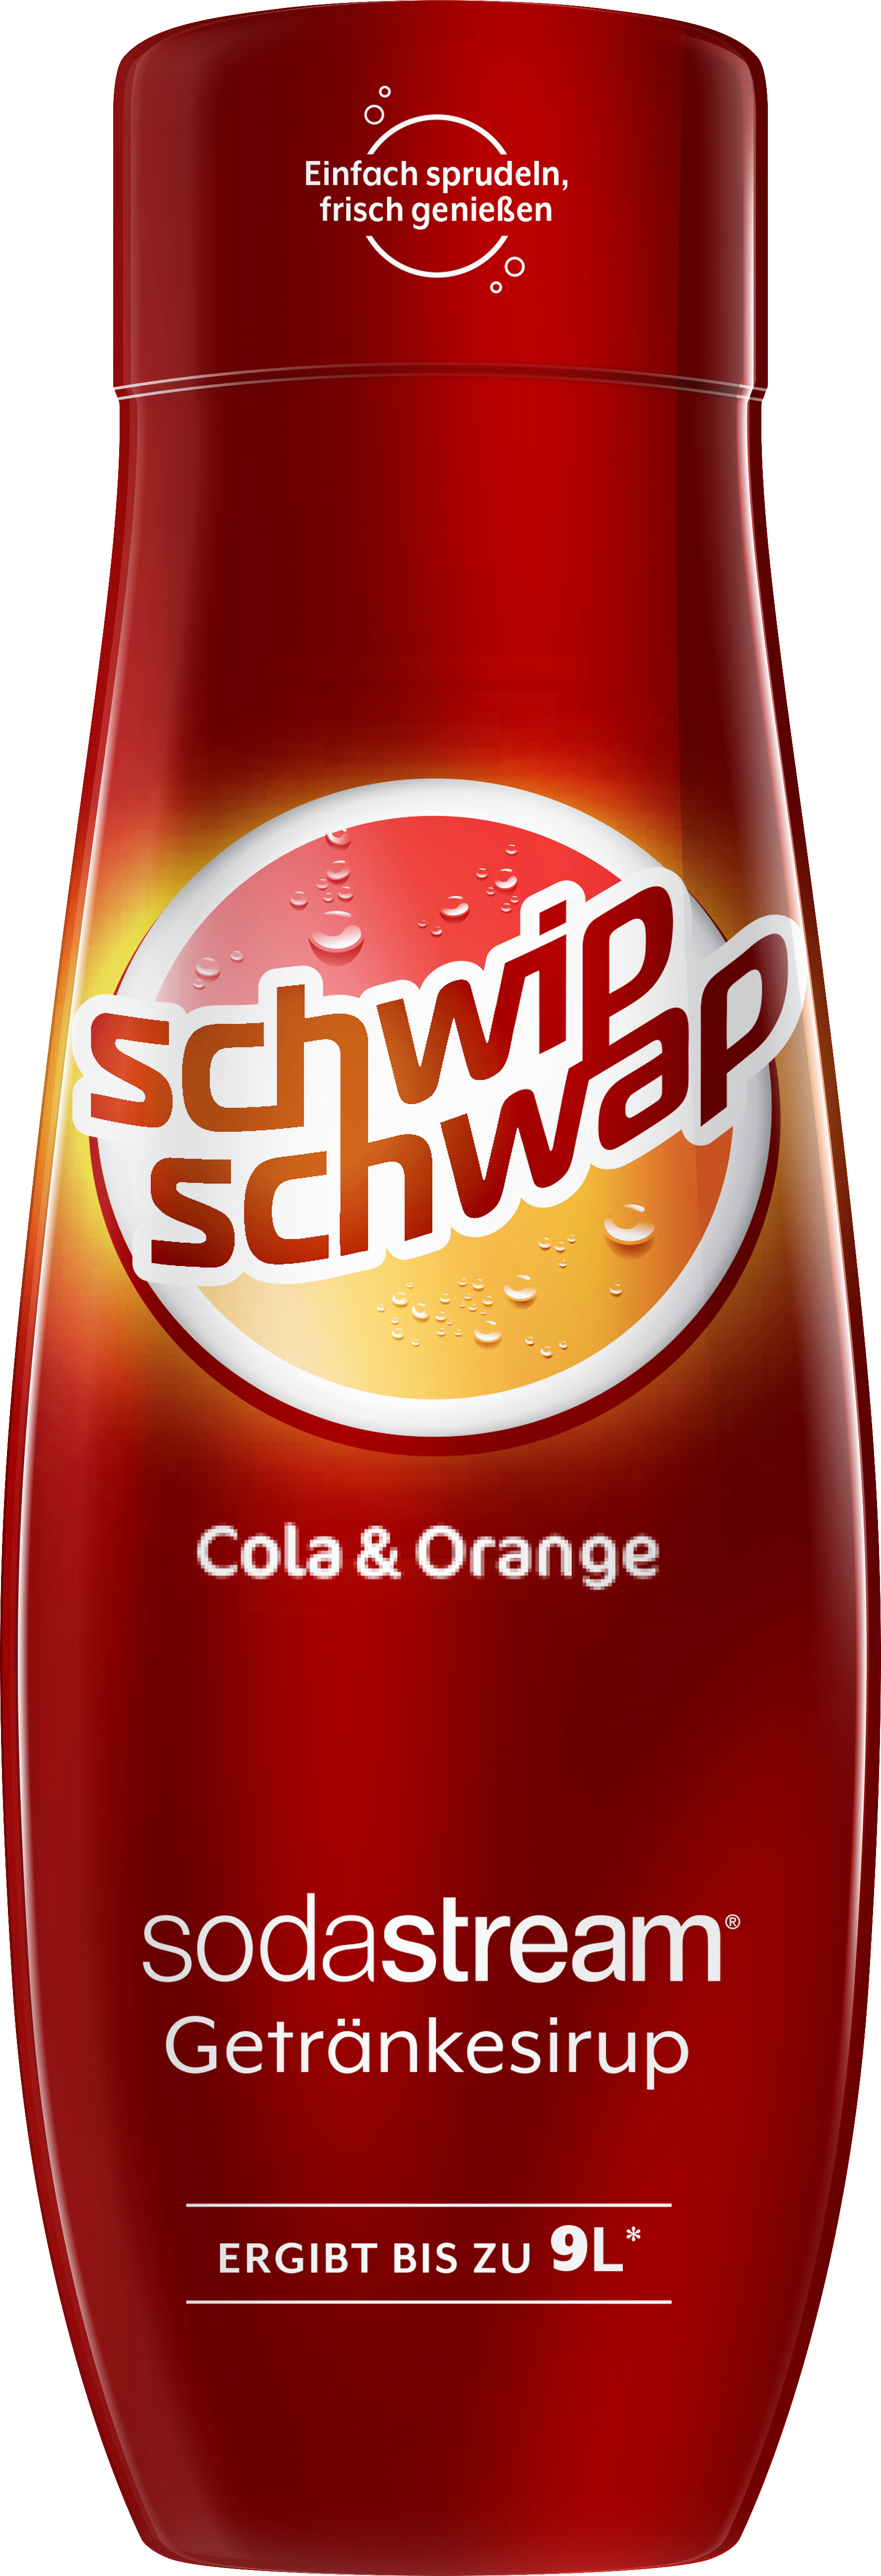 Sirup 1924205490 O.Z. Cola-Orange SODASTREAM SCHWIPSCHWAP SST